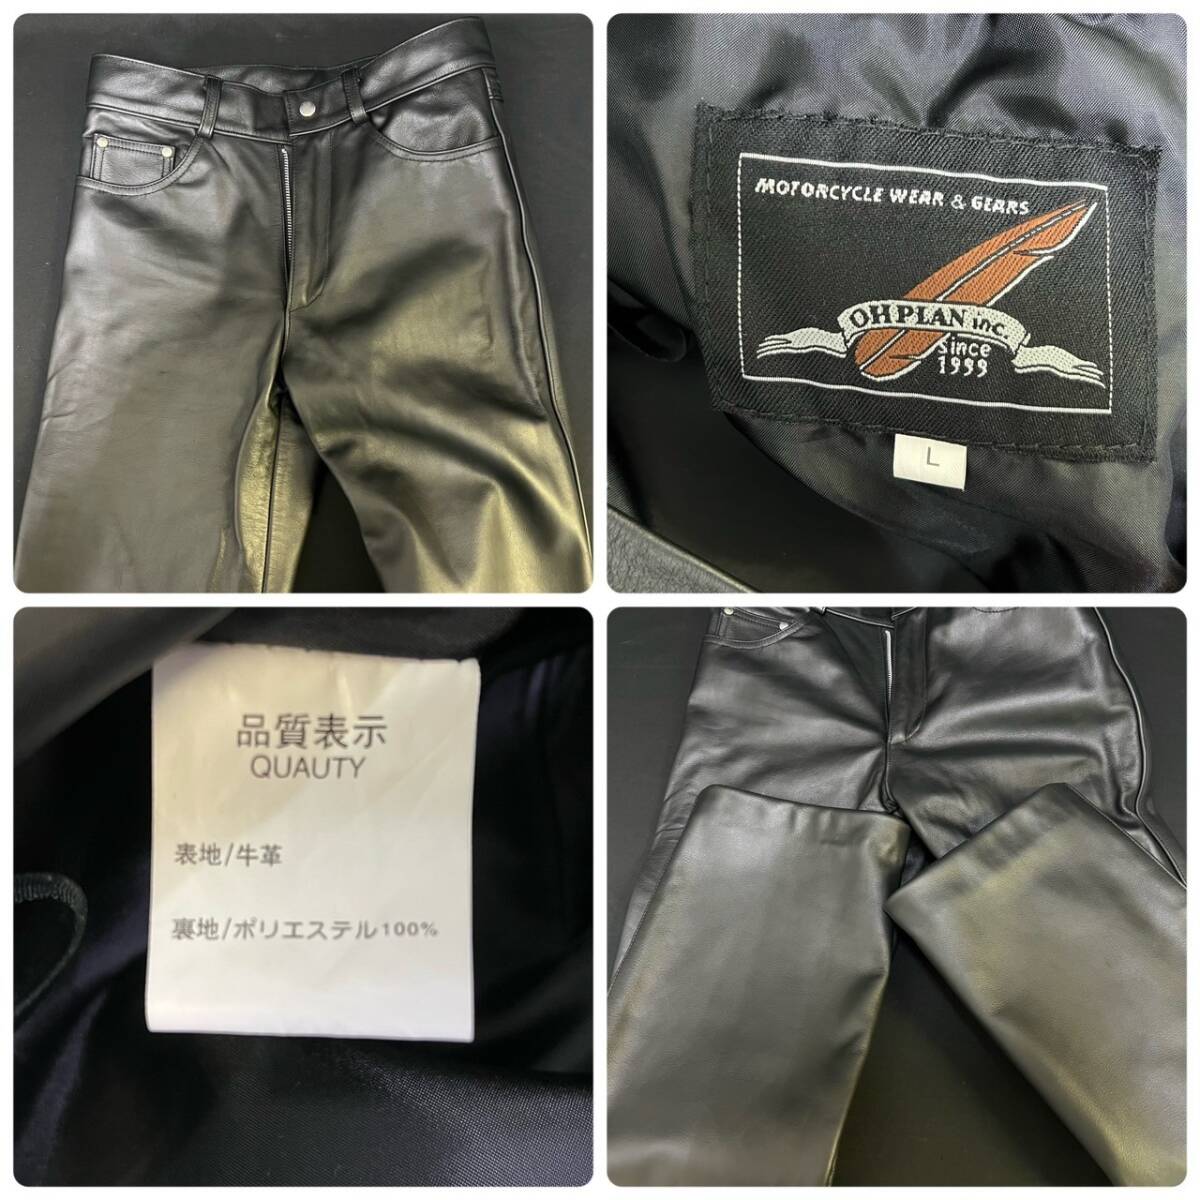 BDg298I 100 leather jacket pants summarize cow leather jacket size L pants OHPLAN/ou plan size L/DISCO size 82 Rider's black 